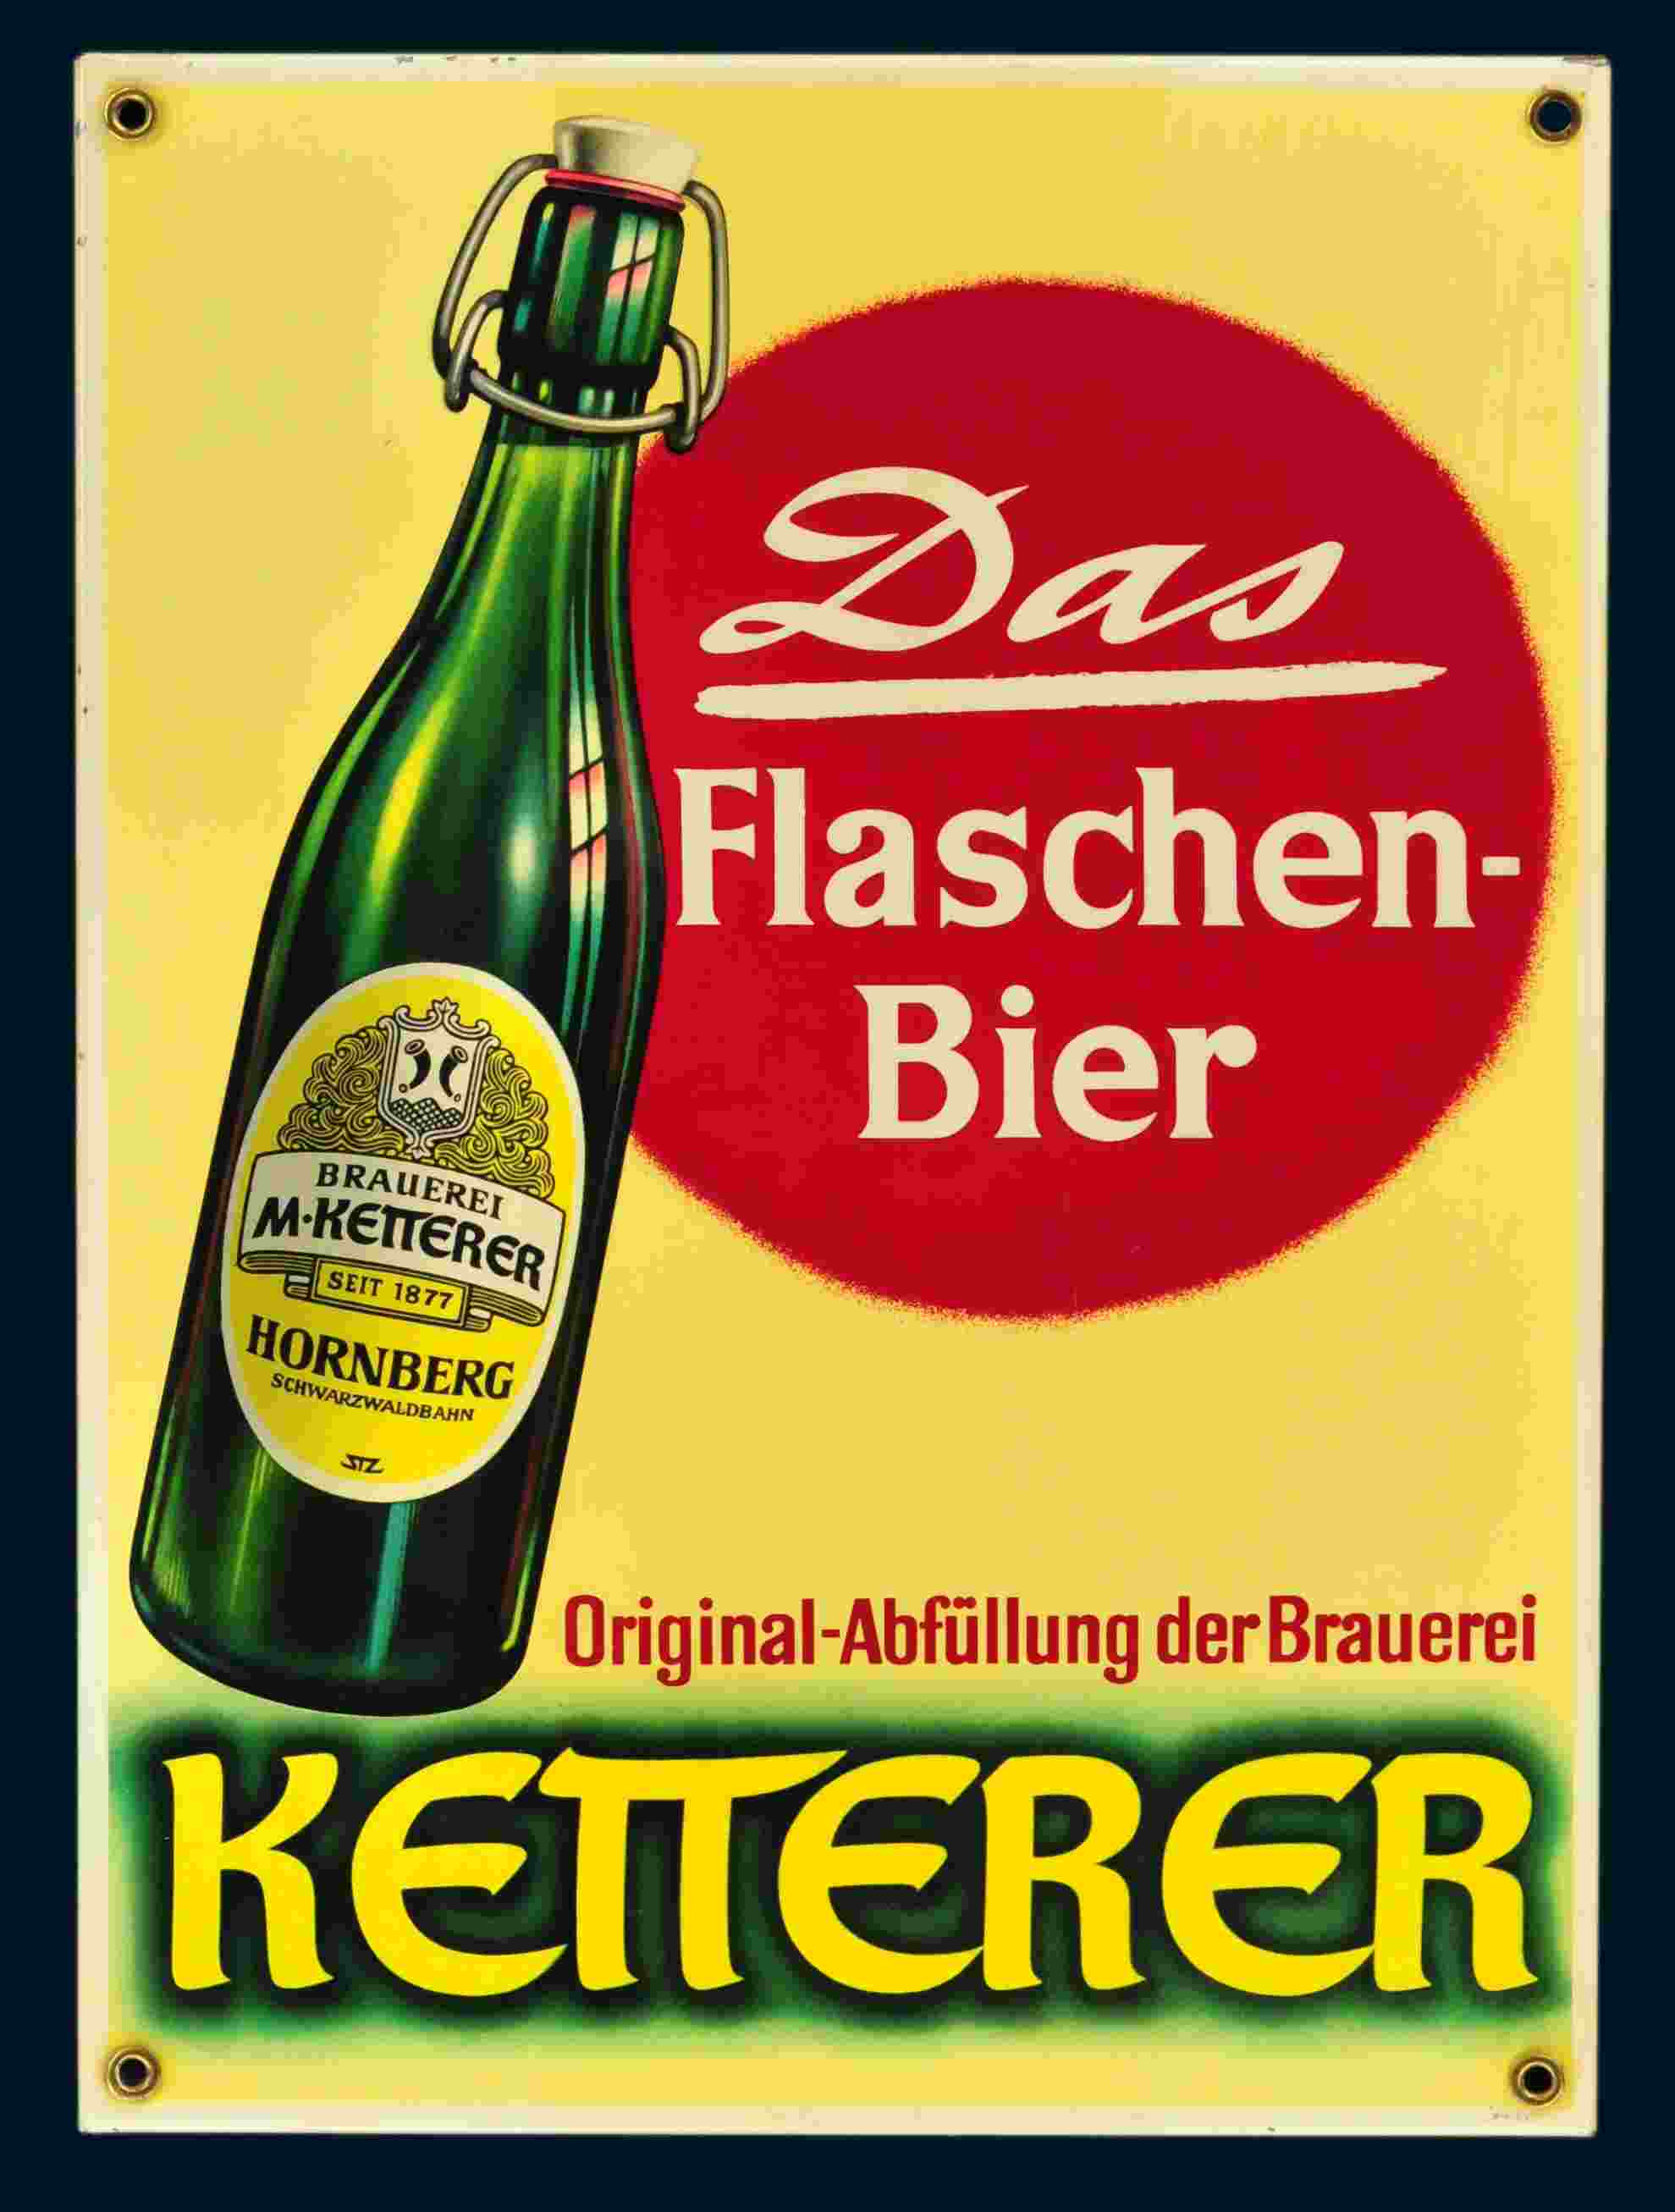 Ketterer Flaschen-Bier 